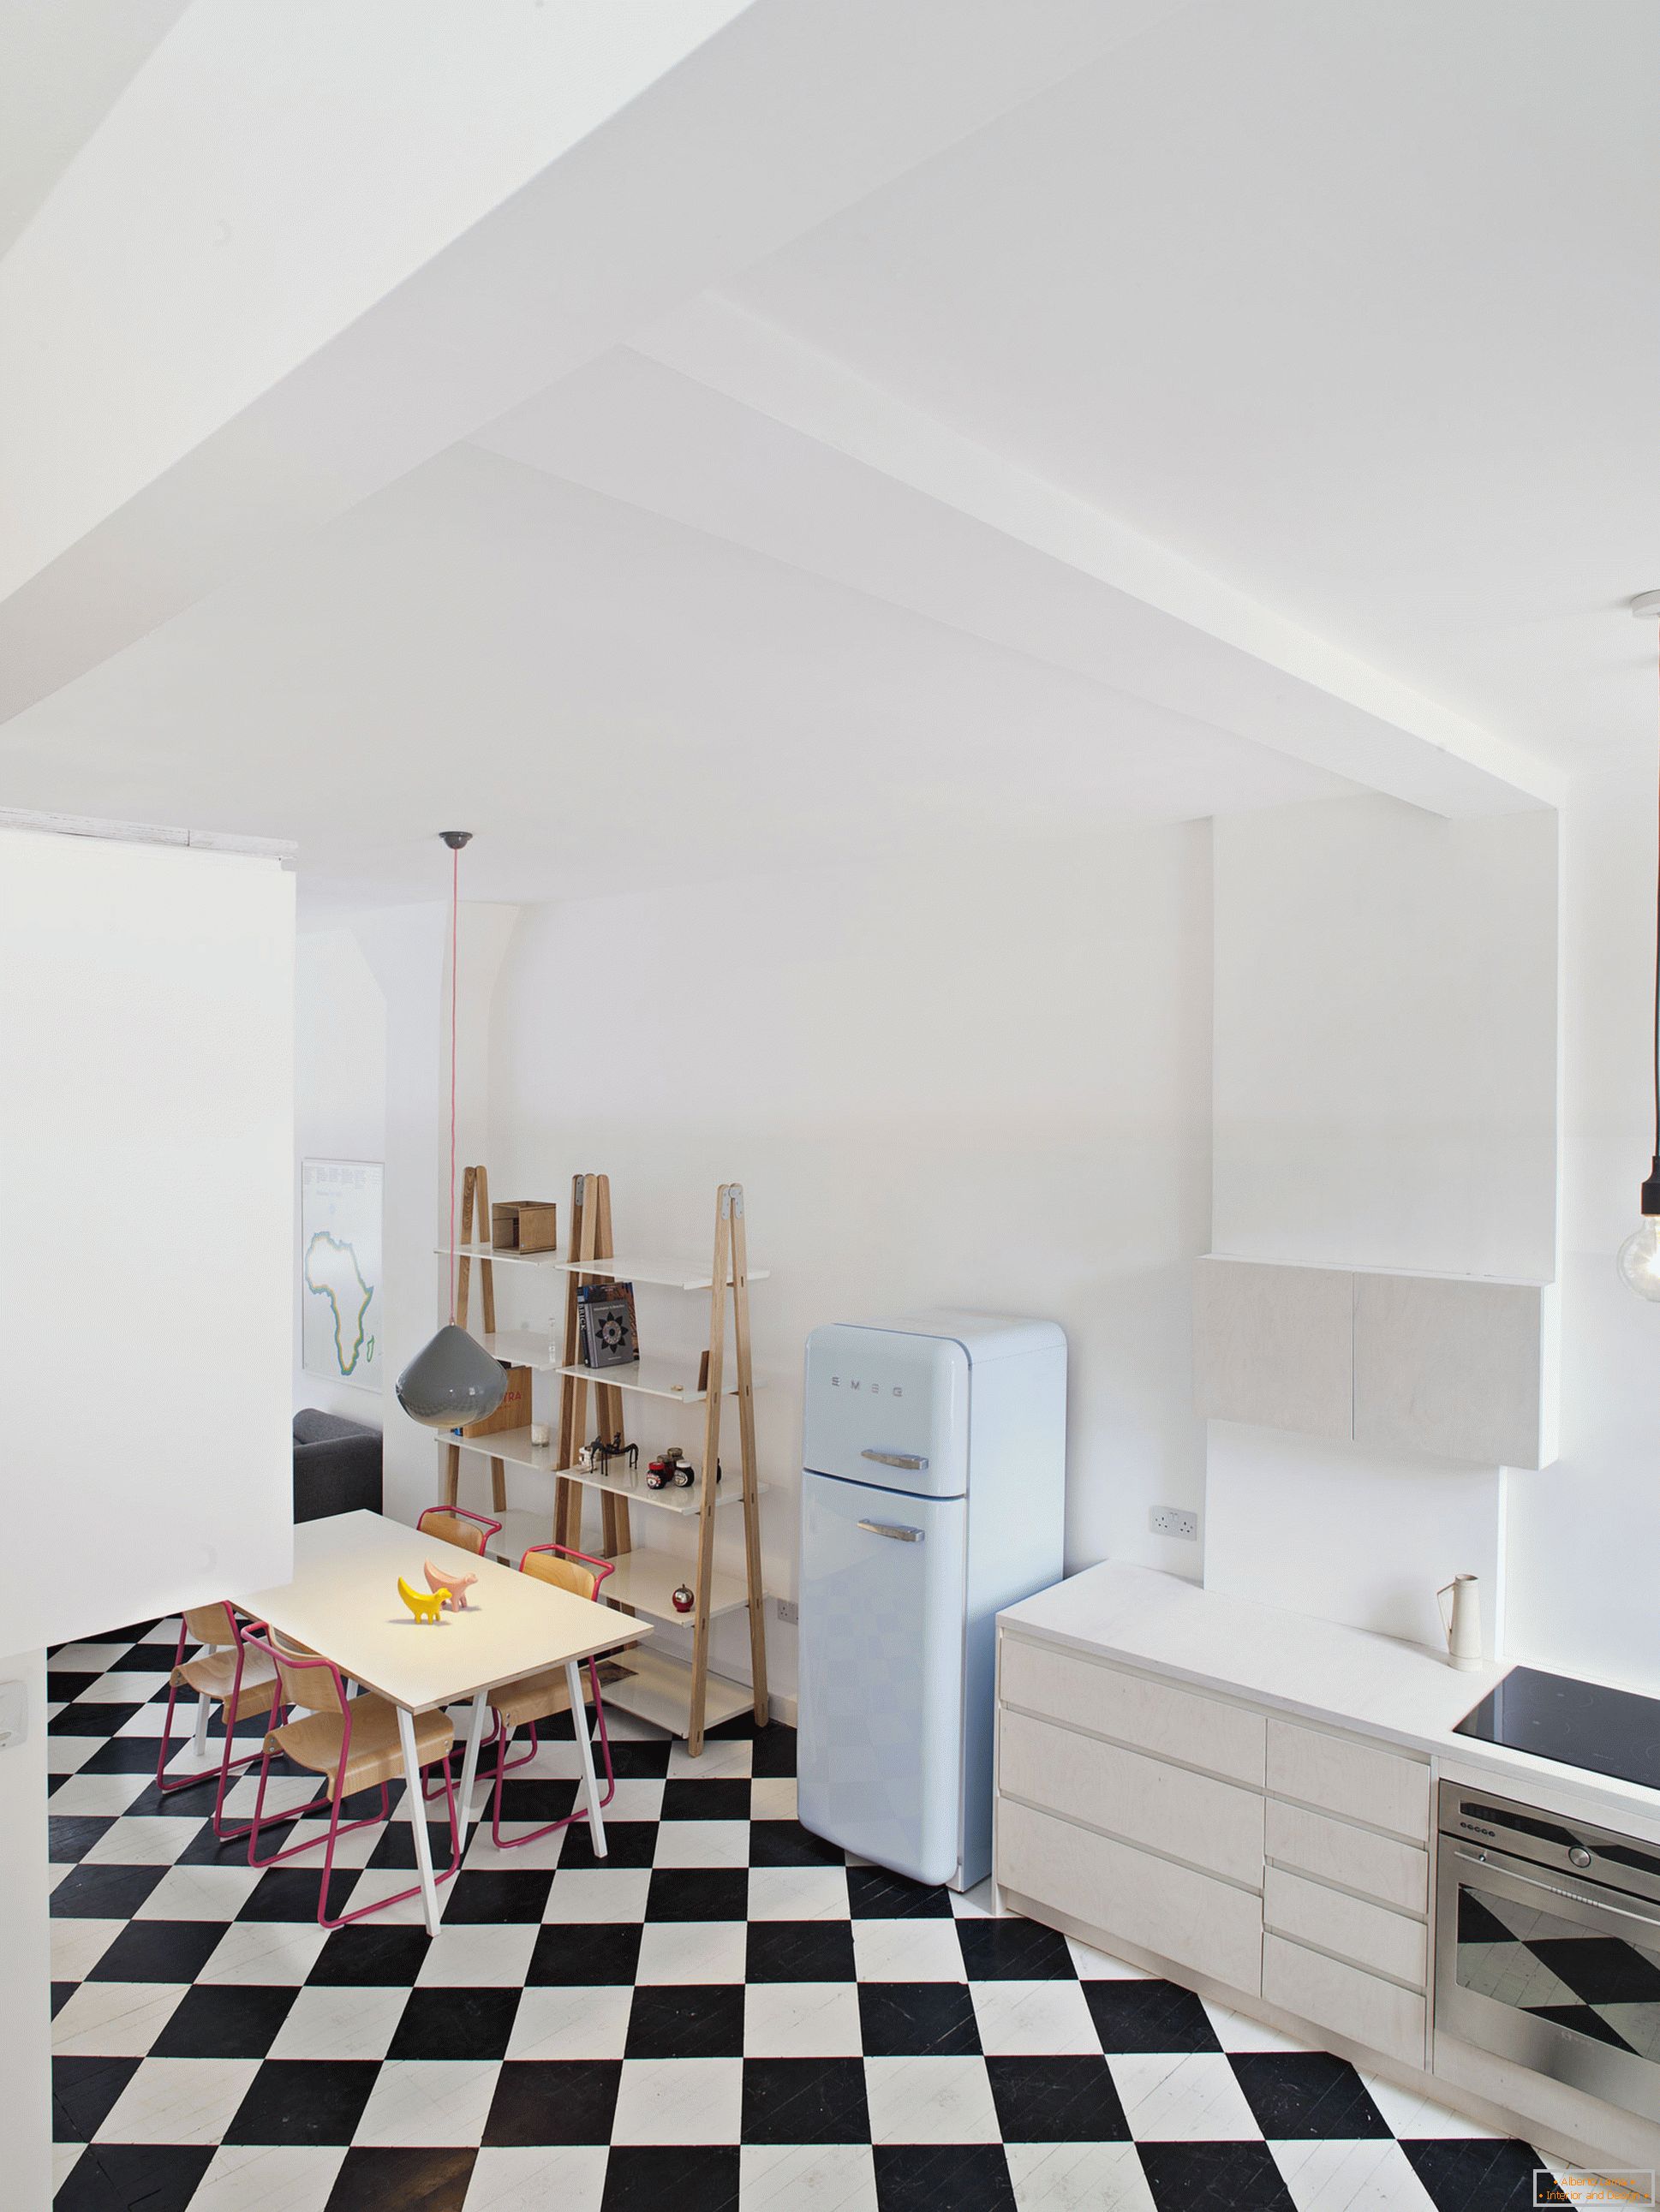 City View House - brutărie, transformată într-un apartament studio rezidențial, Londra, Marea Britanie